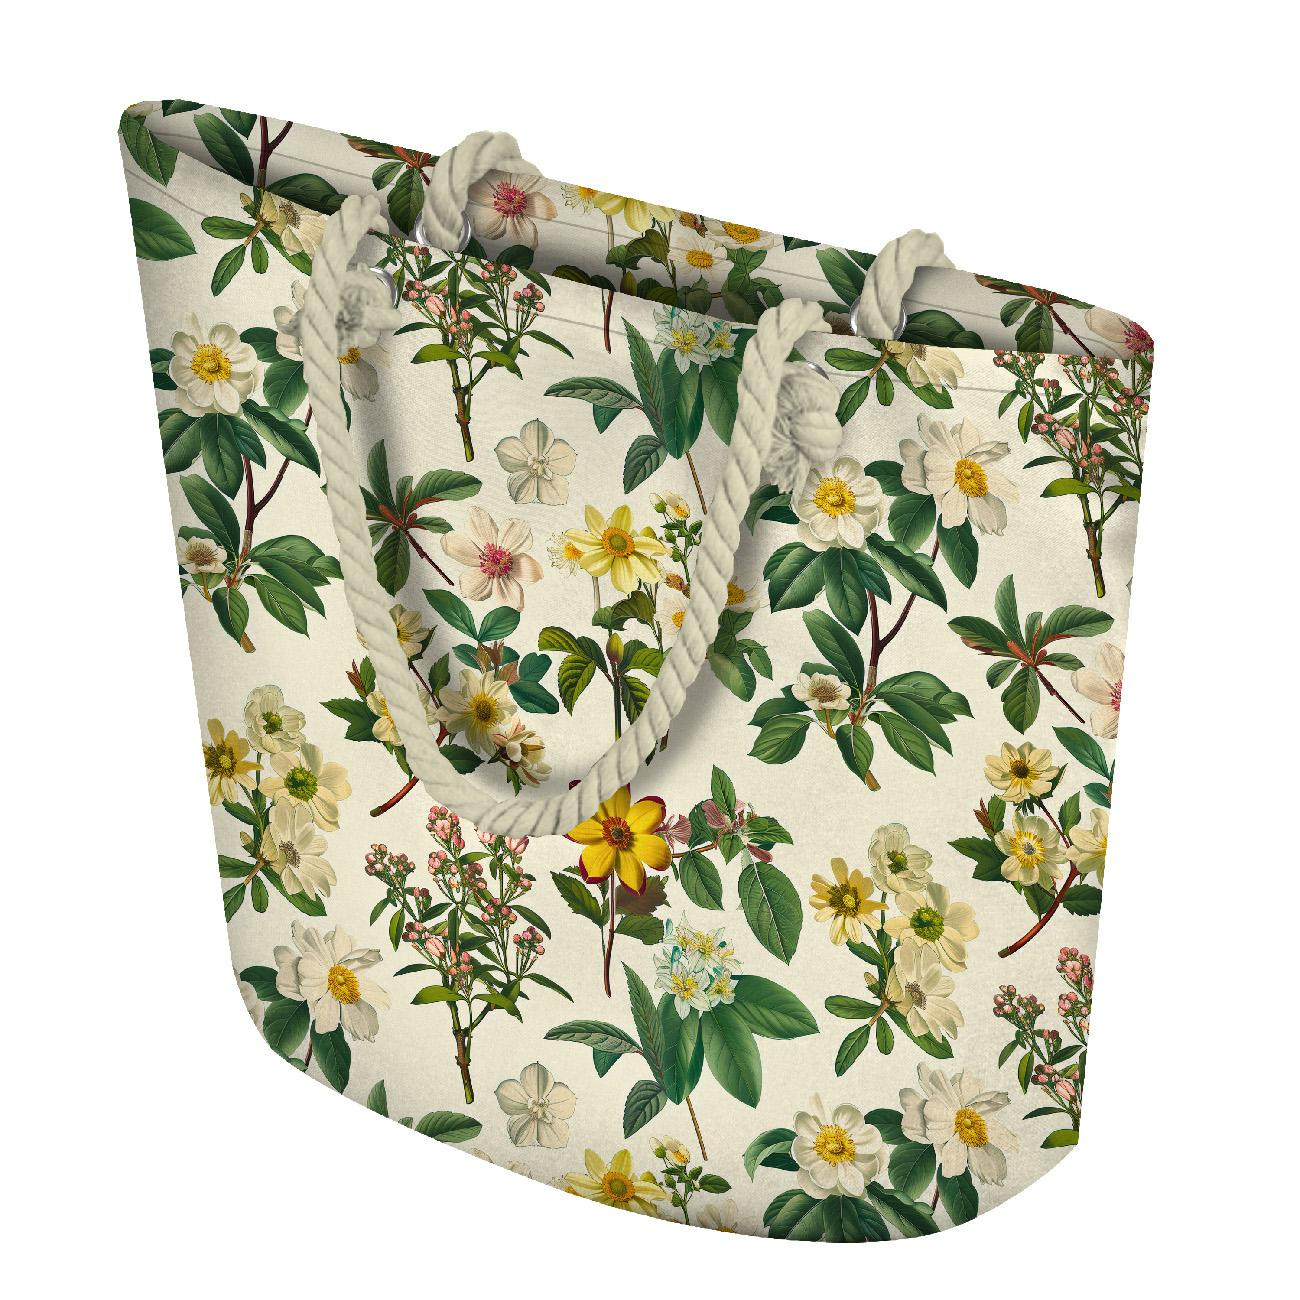 BOTANICAL GARDEN wz.1 - Woven Fabric for tablecloths